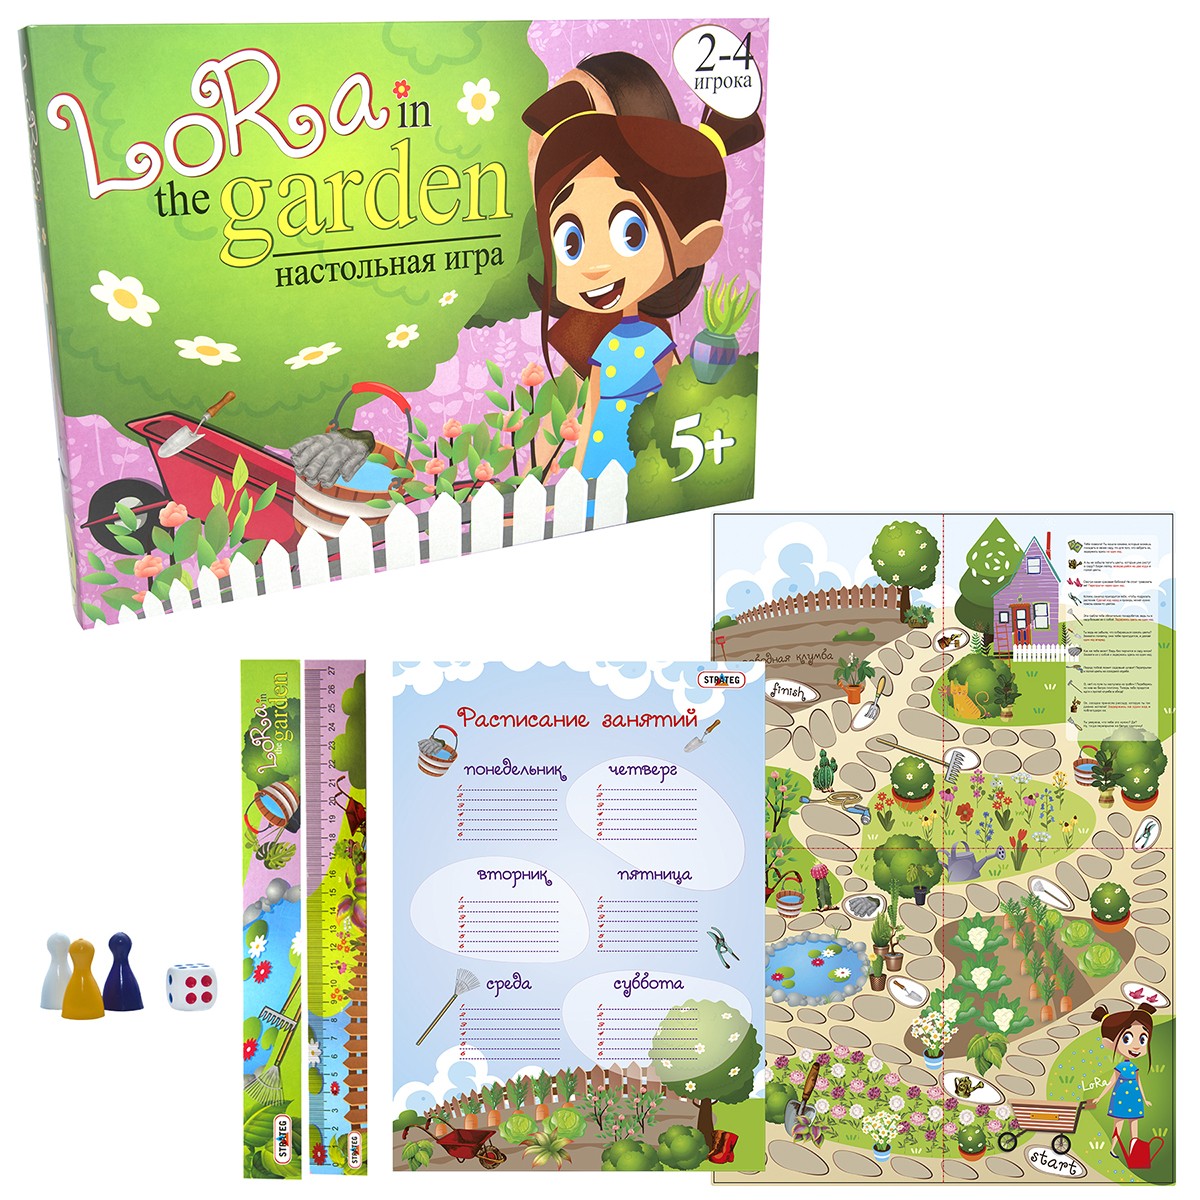 Настільна гра Лора в саду (Lora in the Garden) (RU), бренду Strateg, для 2-4 гравців - 3 - KUBIX 